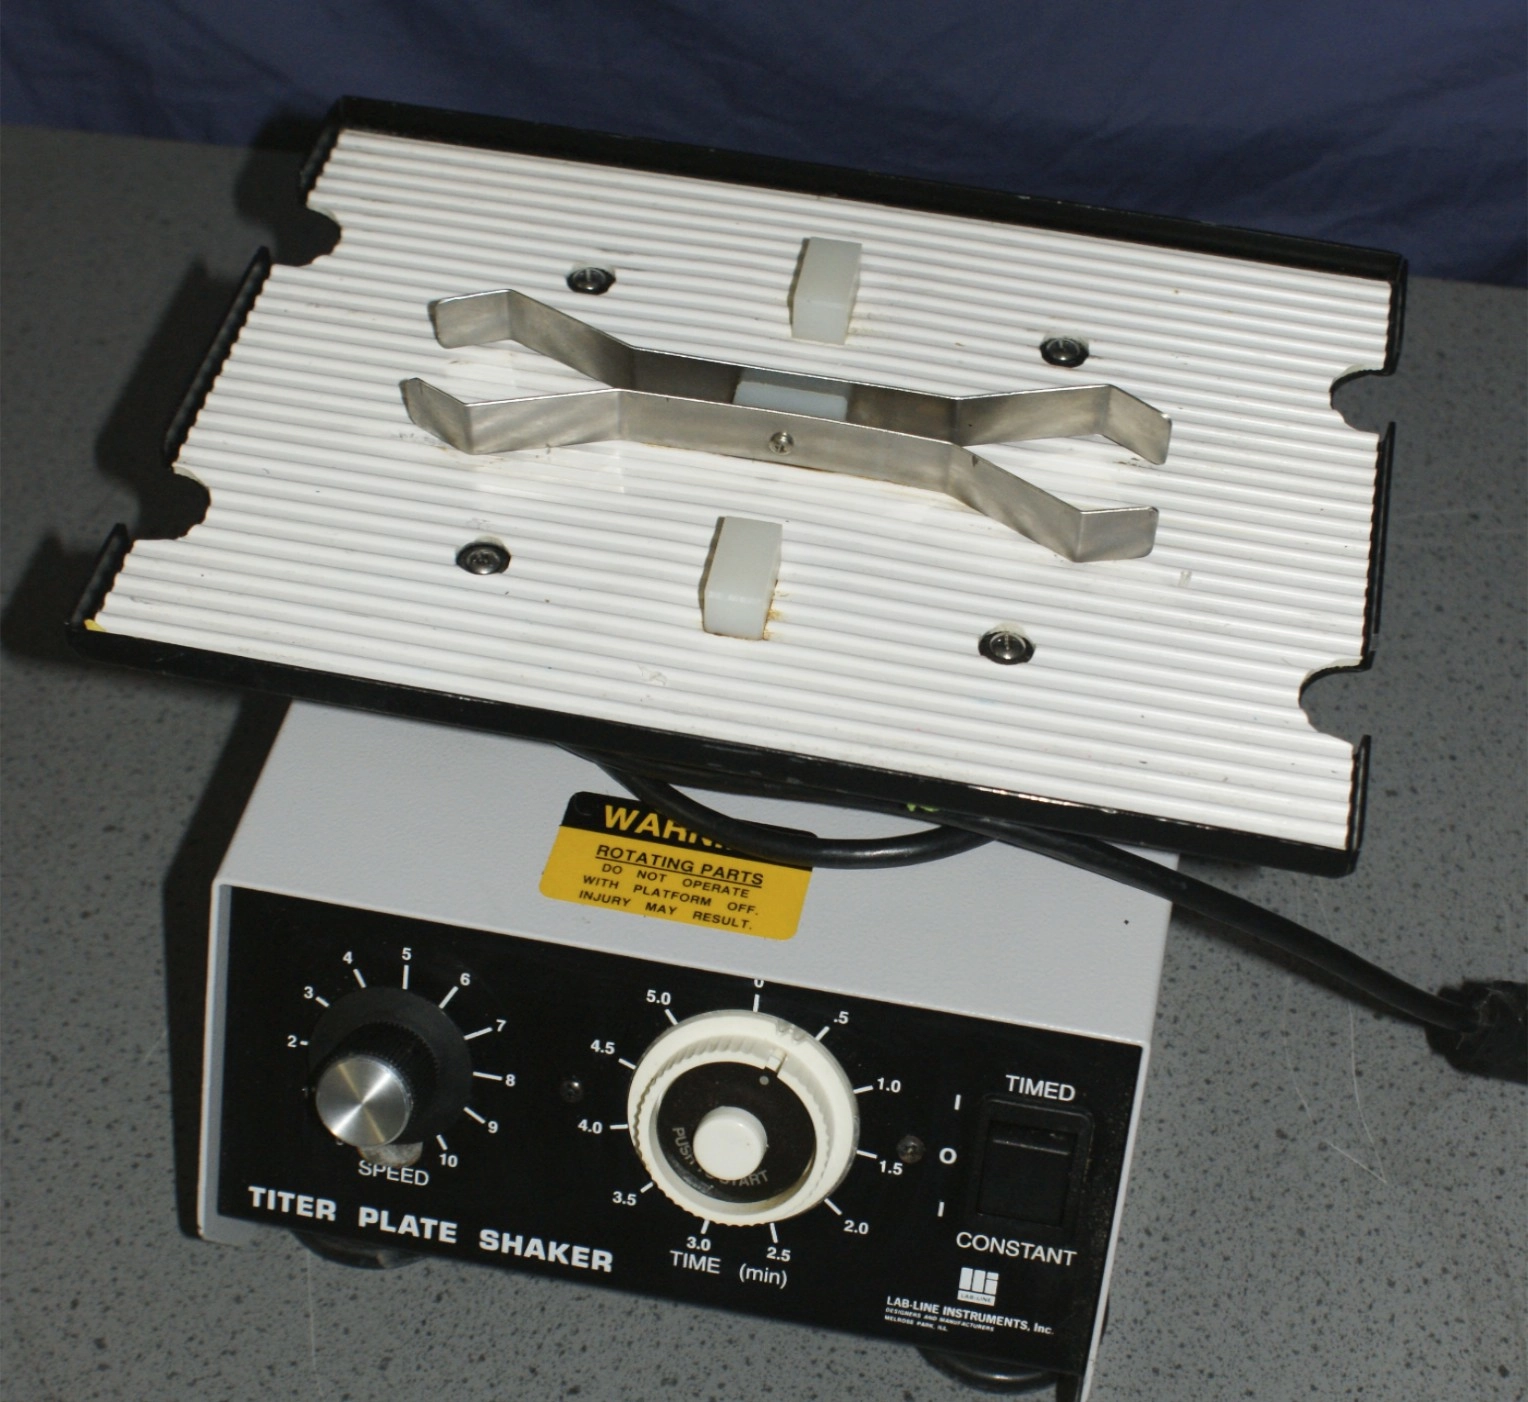 Lab-Line 4625 Labline 4625 Titer Plate Shaker with Platform tested